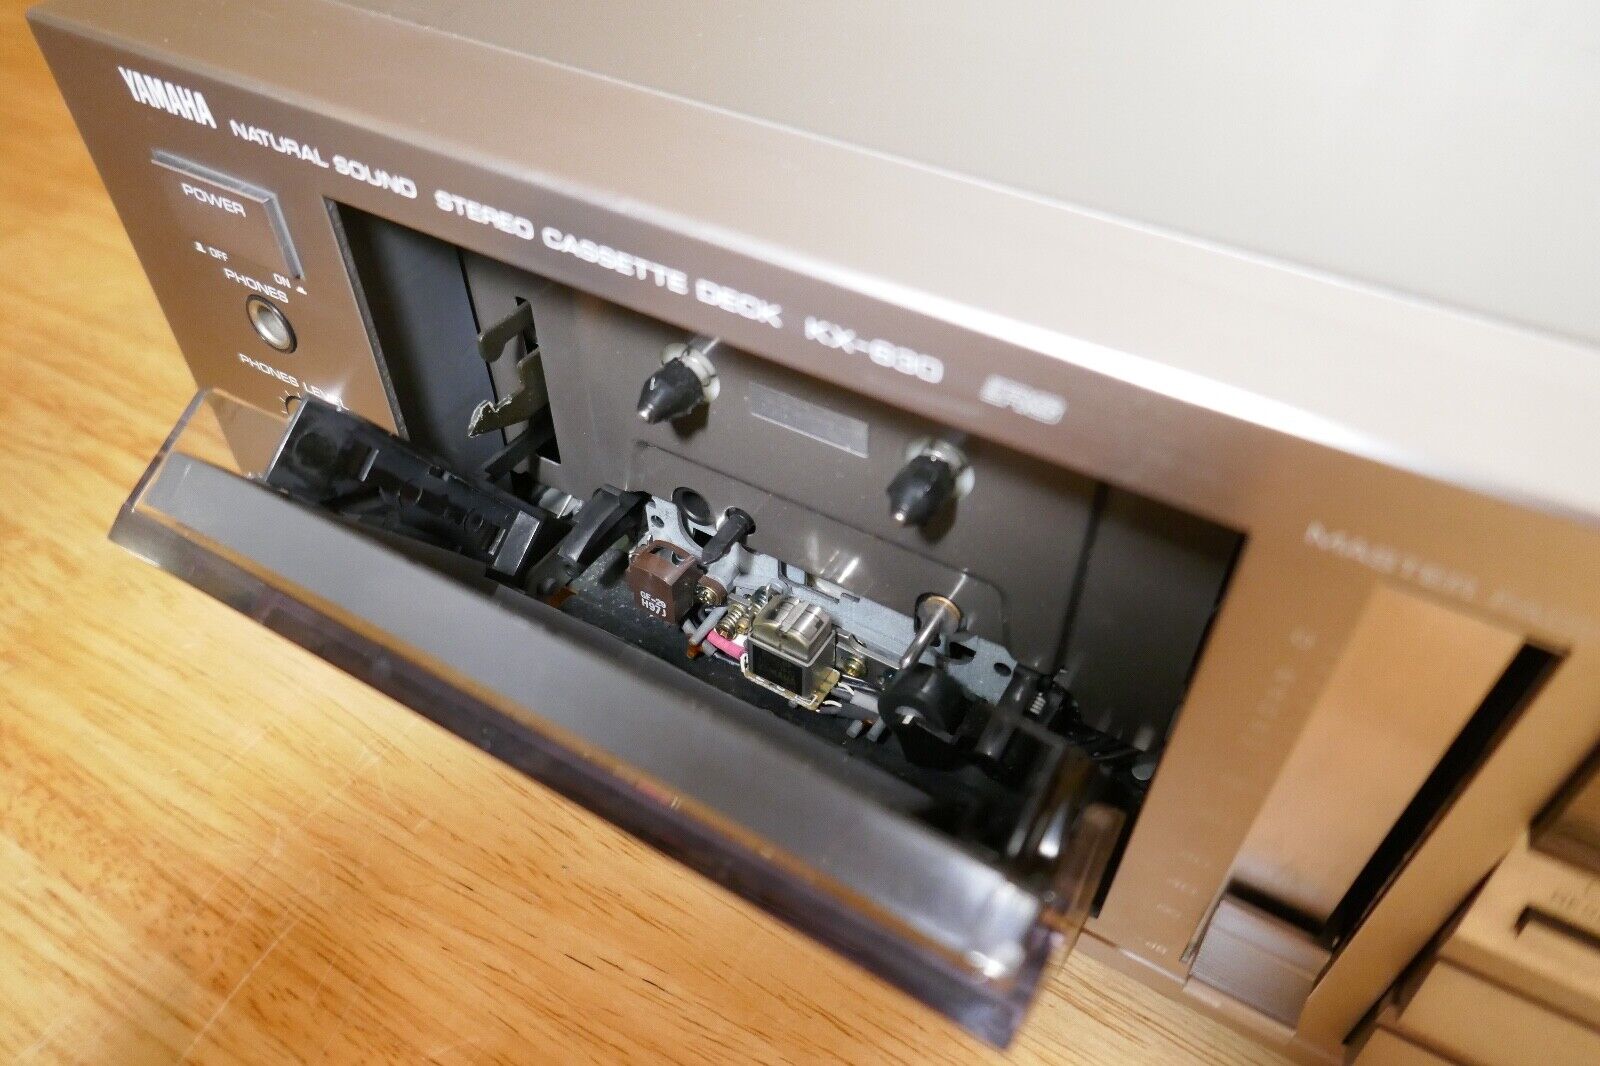 lecteur cassette tape deck Yamaha kx-630 vintage occasion